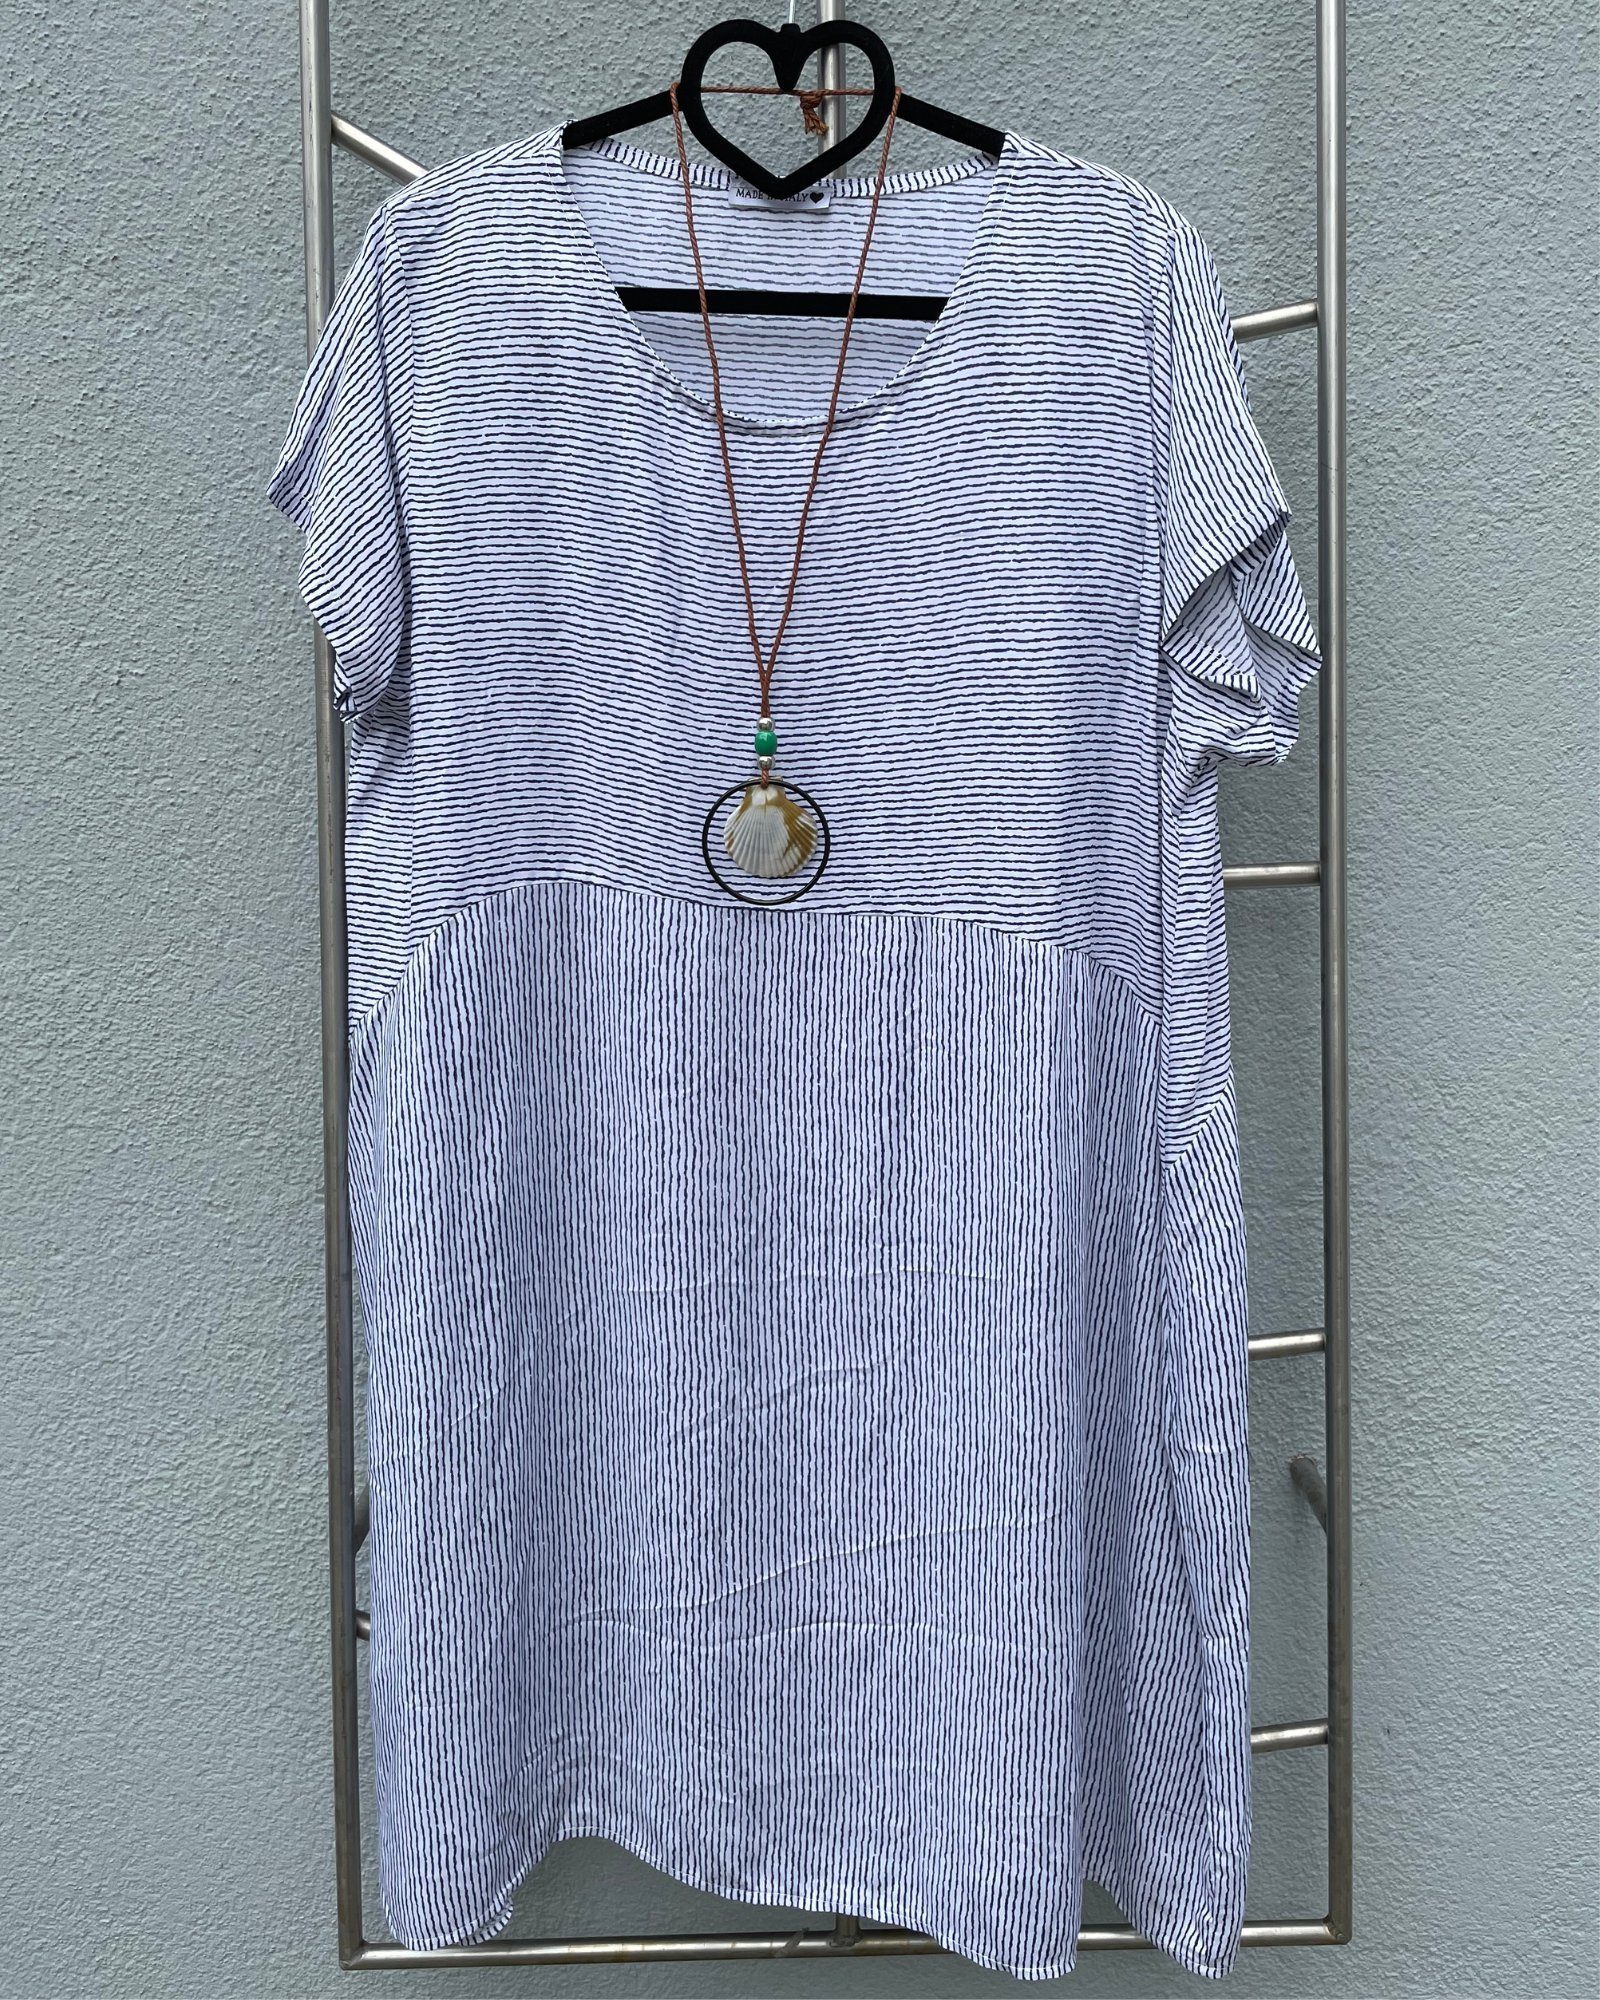 ITALY VIBES Shirtkleid - weites Midikleid SANDRA - kurzarm Kleid mit gratis Kette - ONE SIZE passt hier Gr. S - XXL weiß/blau